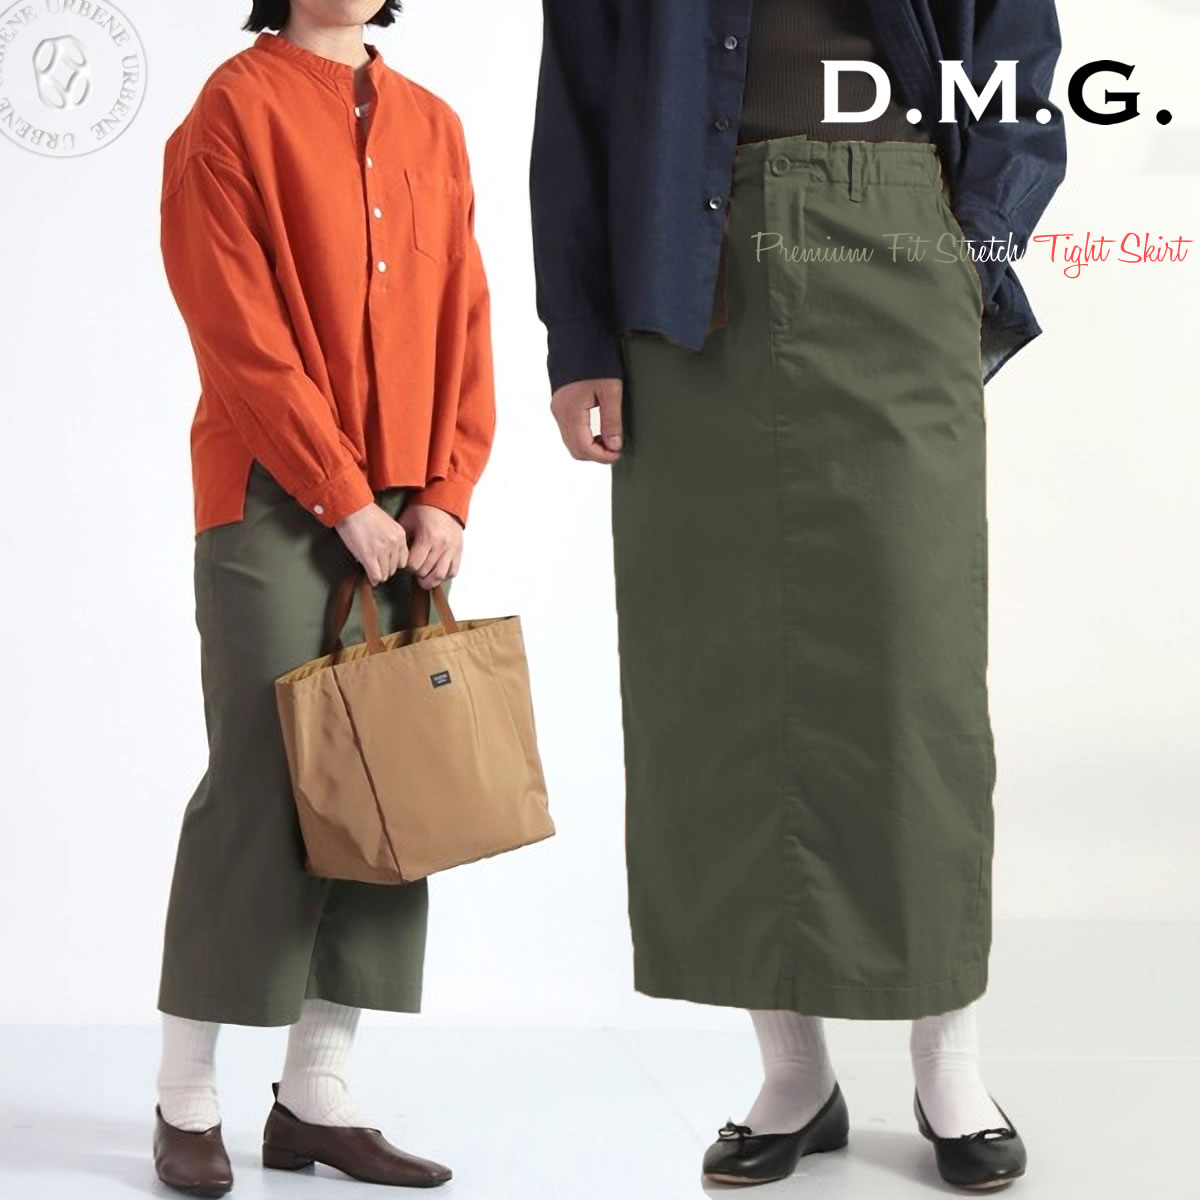 ドミンゴ スカート d.m.g ストレッチタイトスカート DMG プレミアムフィット 20sFTYス...